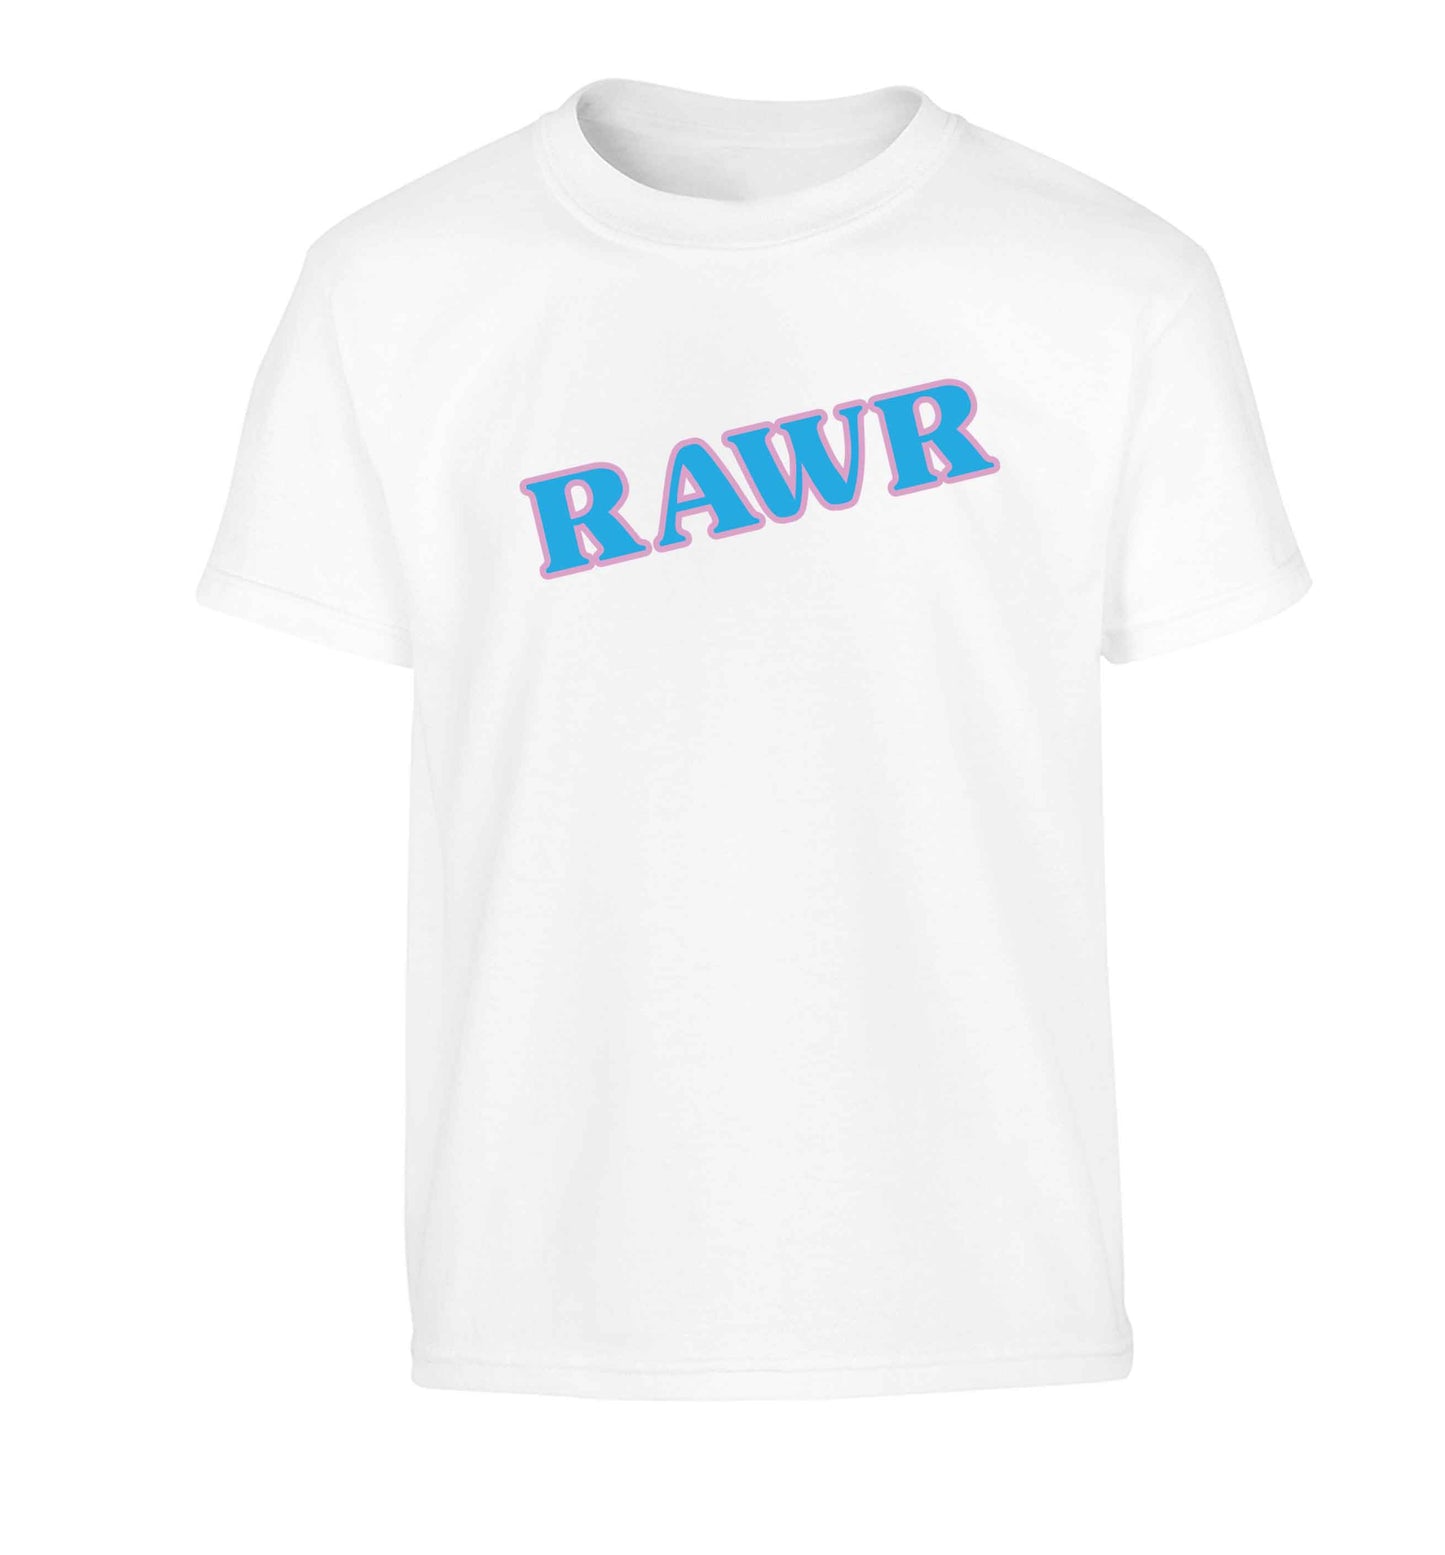 Rawr Children's white Tshirt 12-13 Years